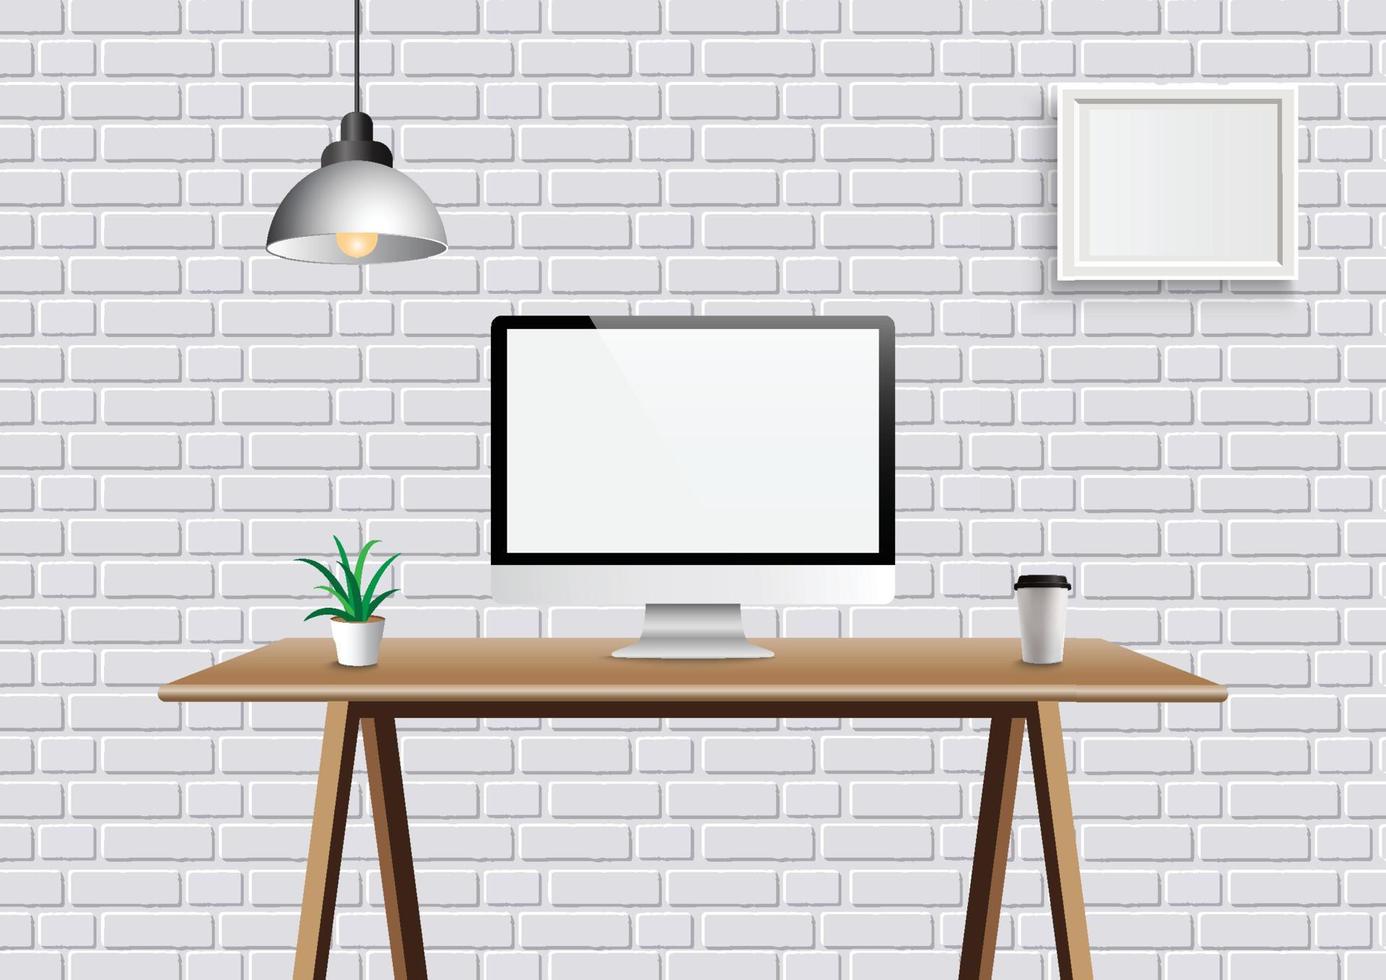 espace créatif de bureau vectoriel réaliste avec affichage sur table de bureau. arrière-plan de l'espace de travail maquette avec bureau d'ordinateur vue de face et cadre sur le mur.